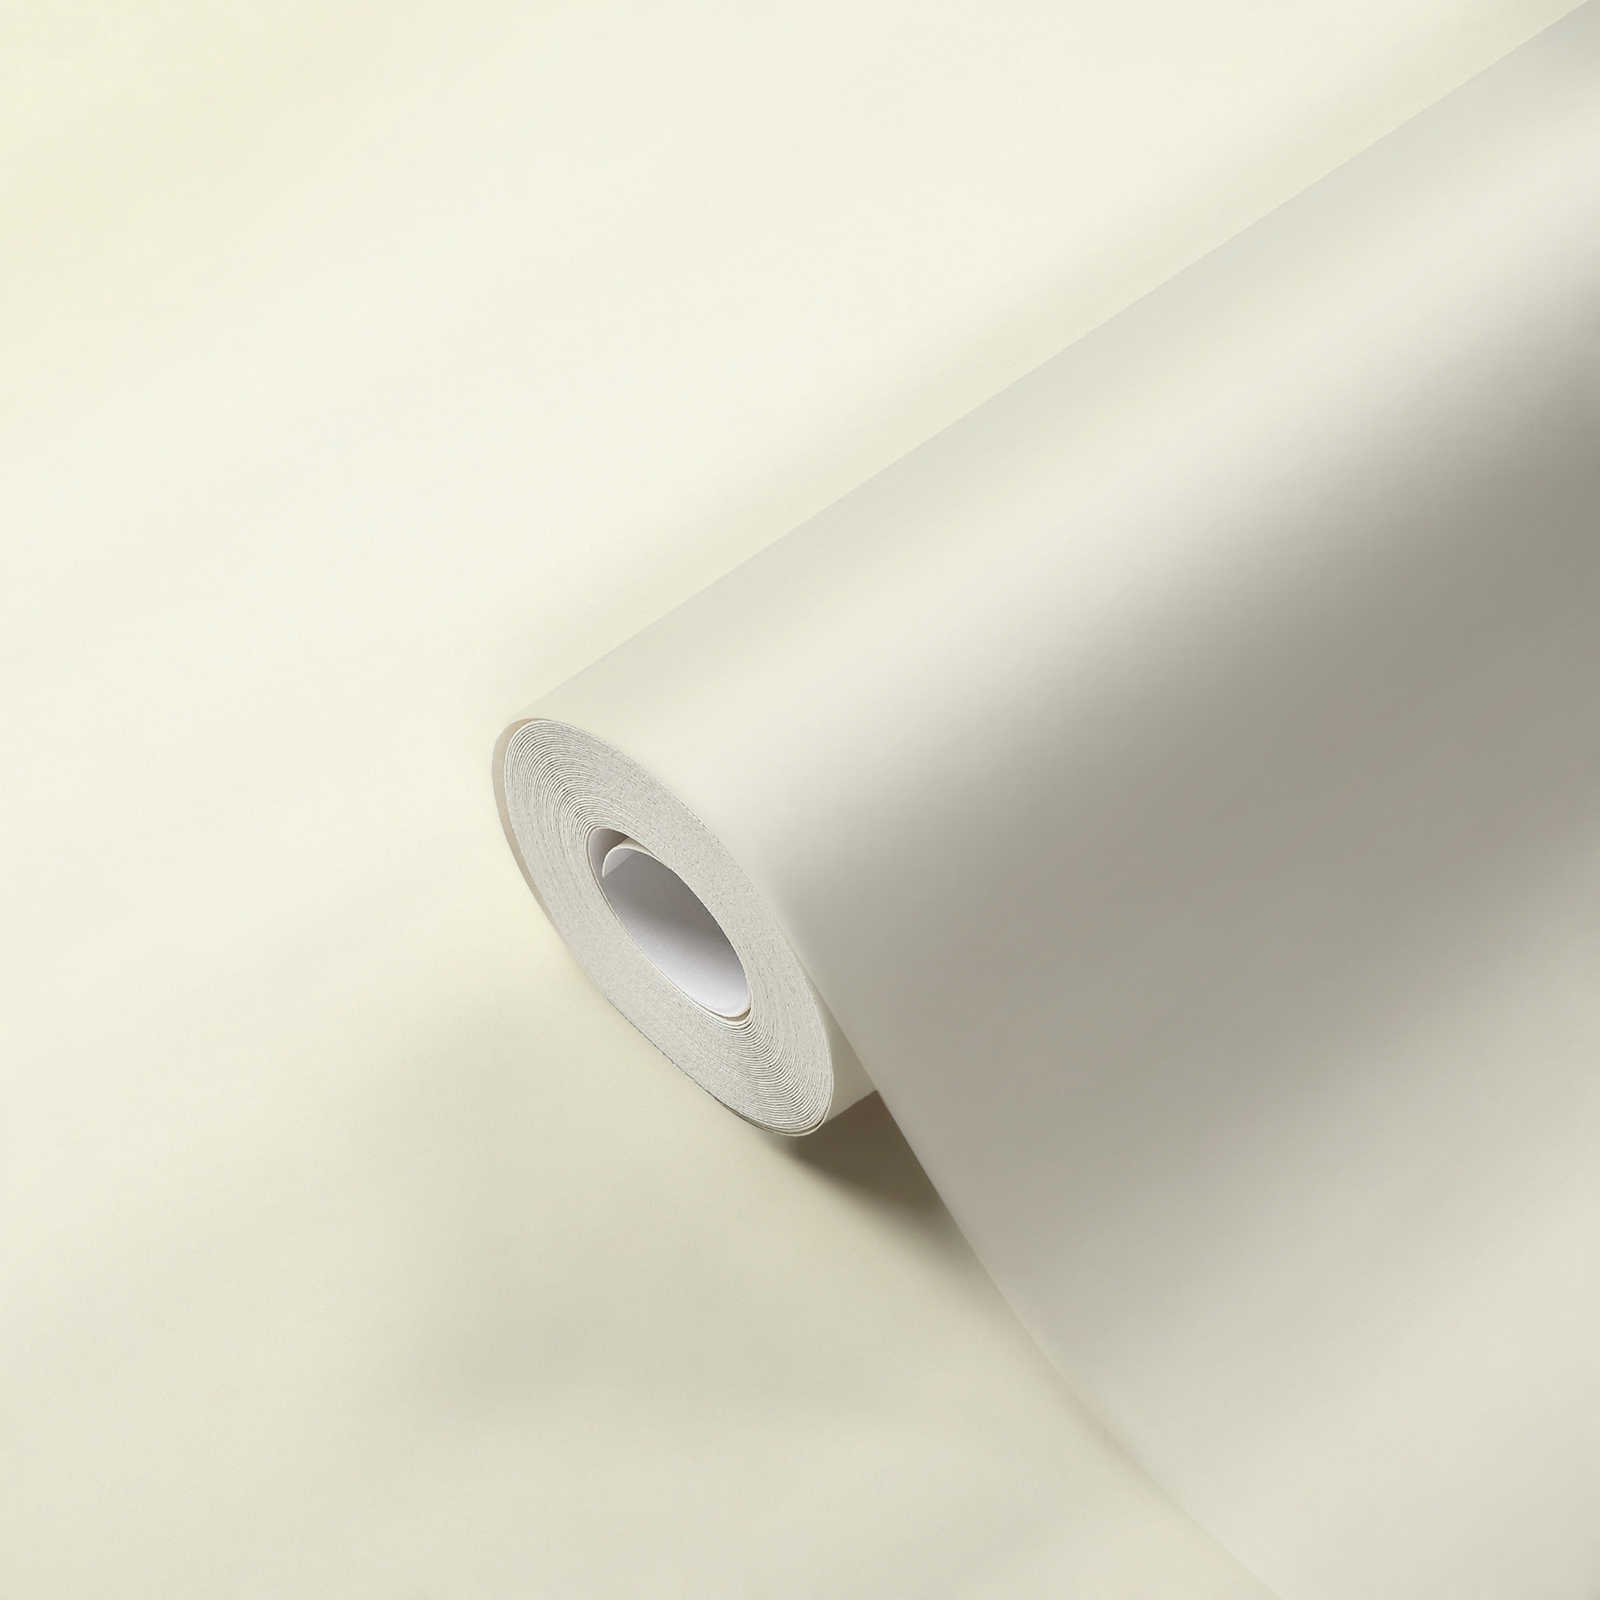             Tapete Weiß mit Buchleinen-Struktur & Textileffekt
        